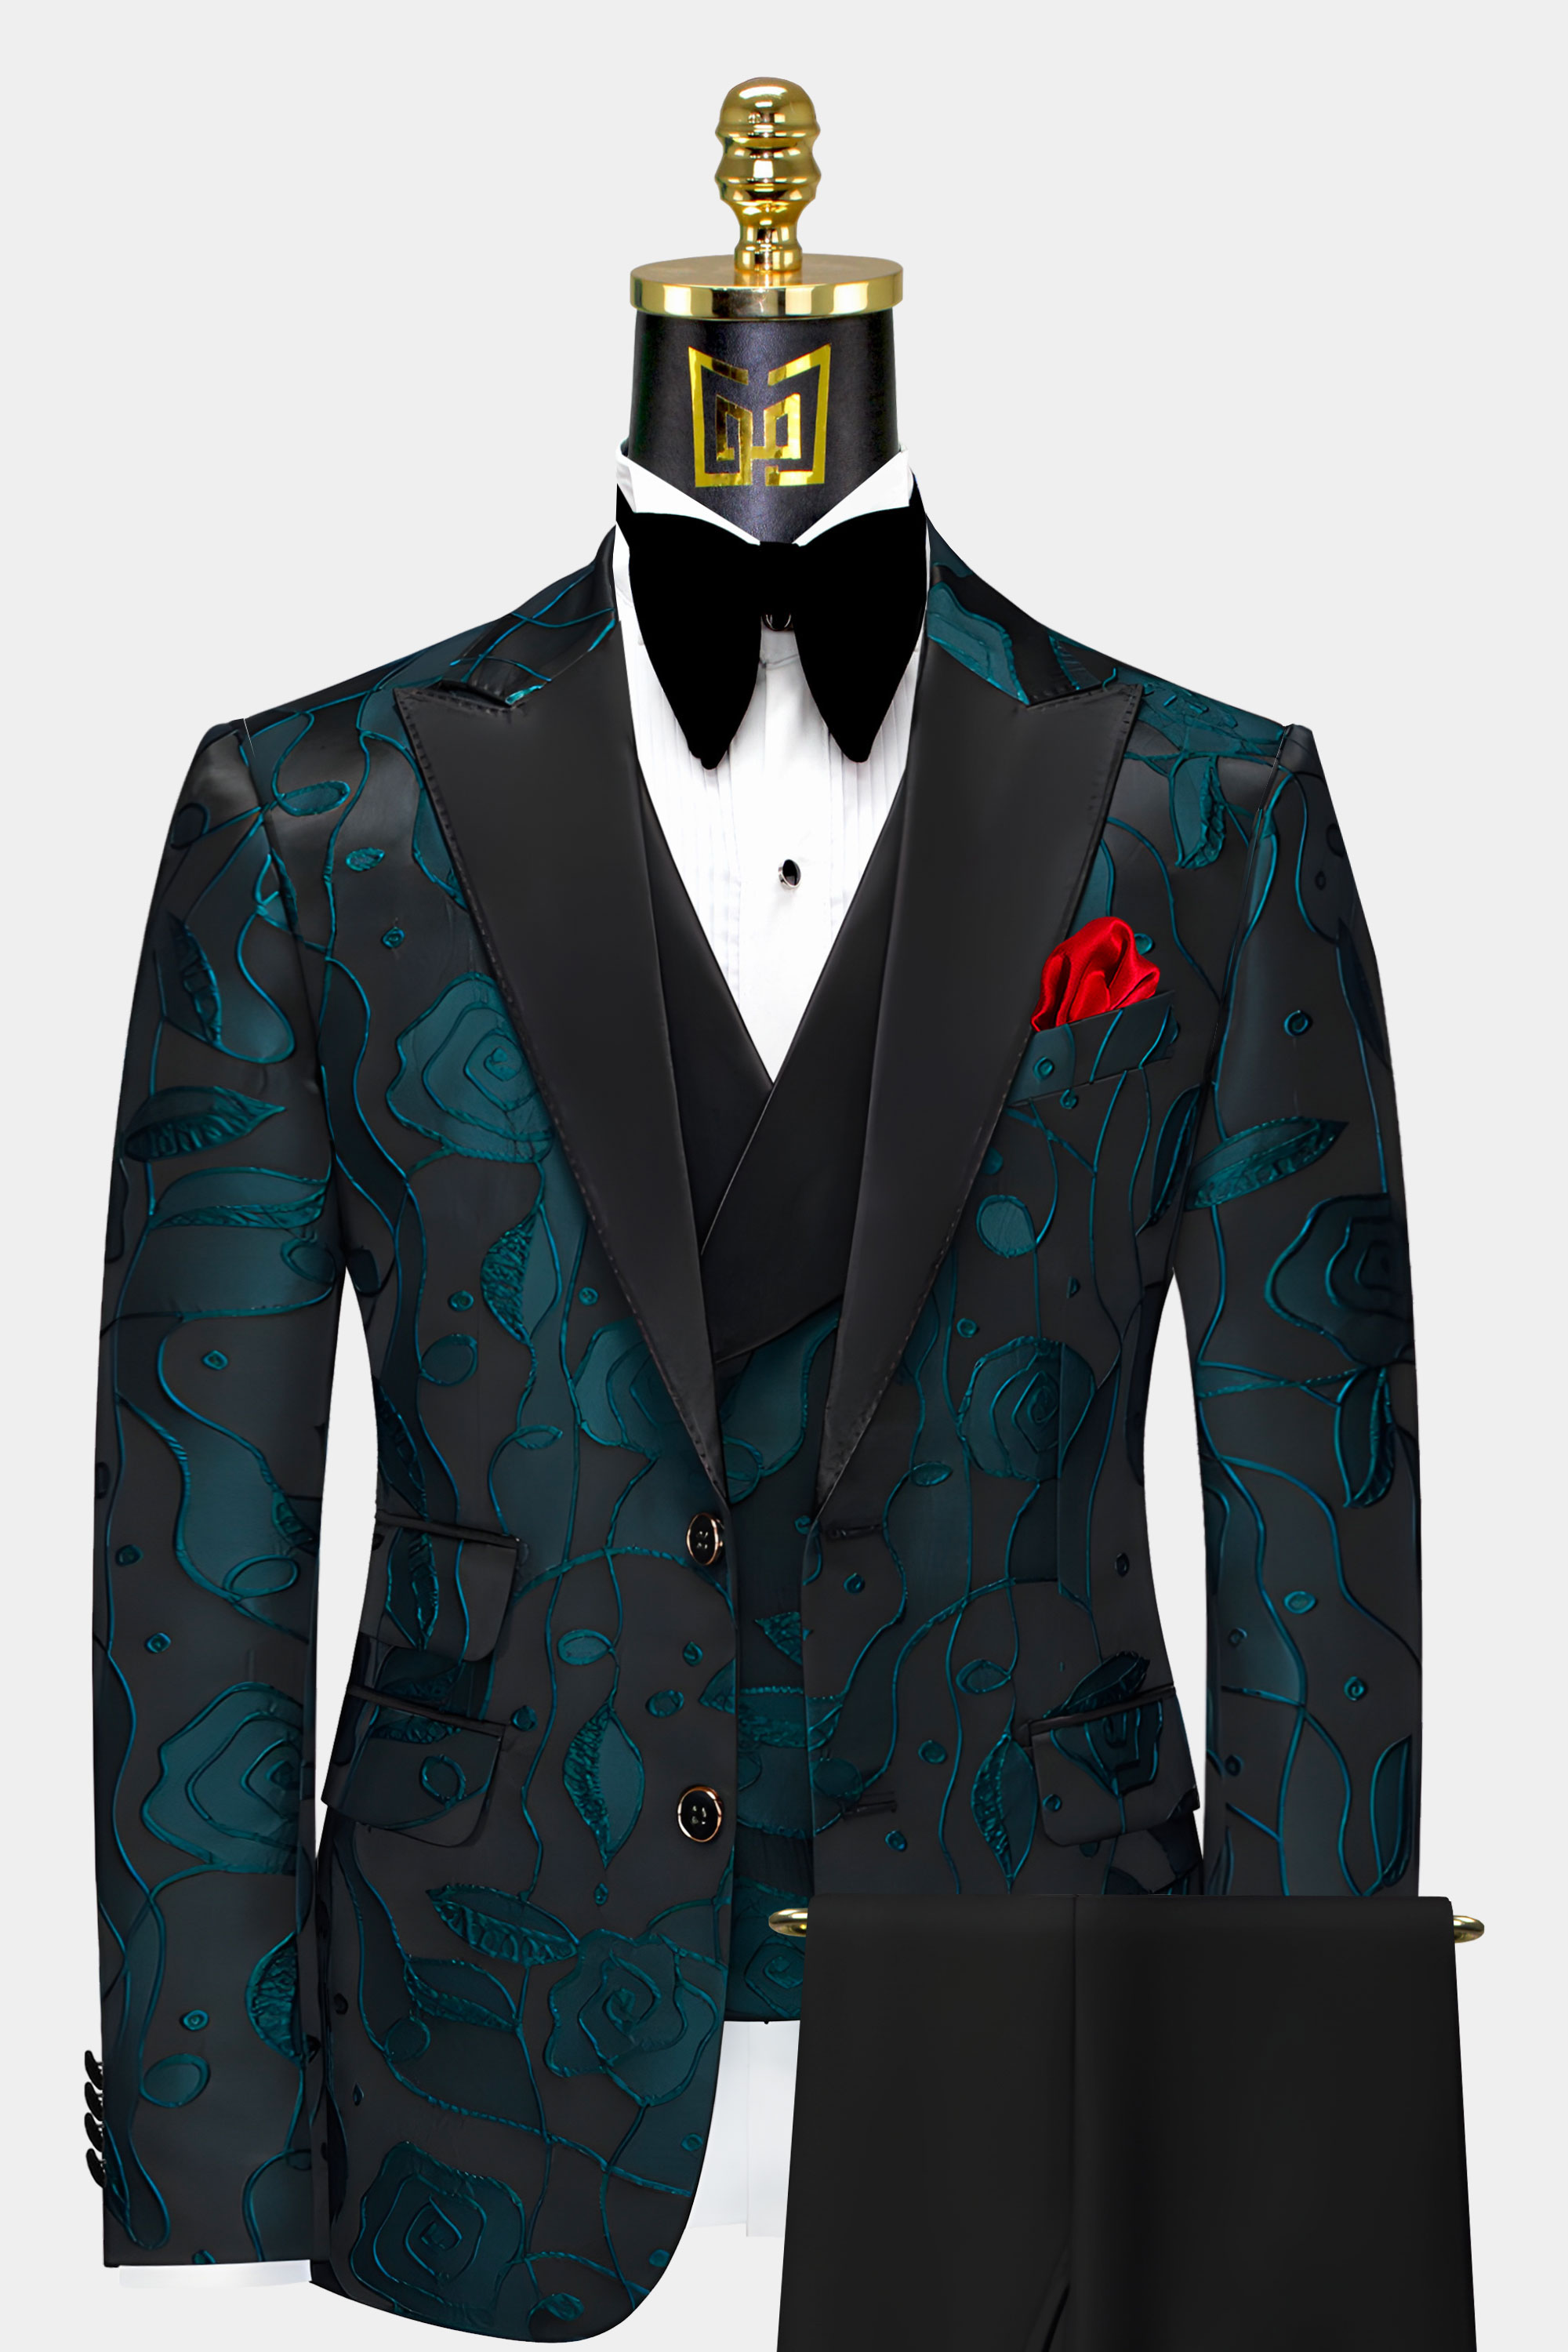 Black-and-Teal-Tuxedo-Groom-Wedding-Suit-from-Gentlemansguru.com